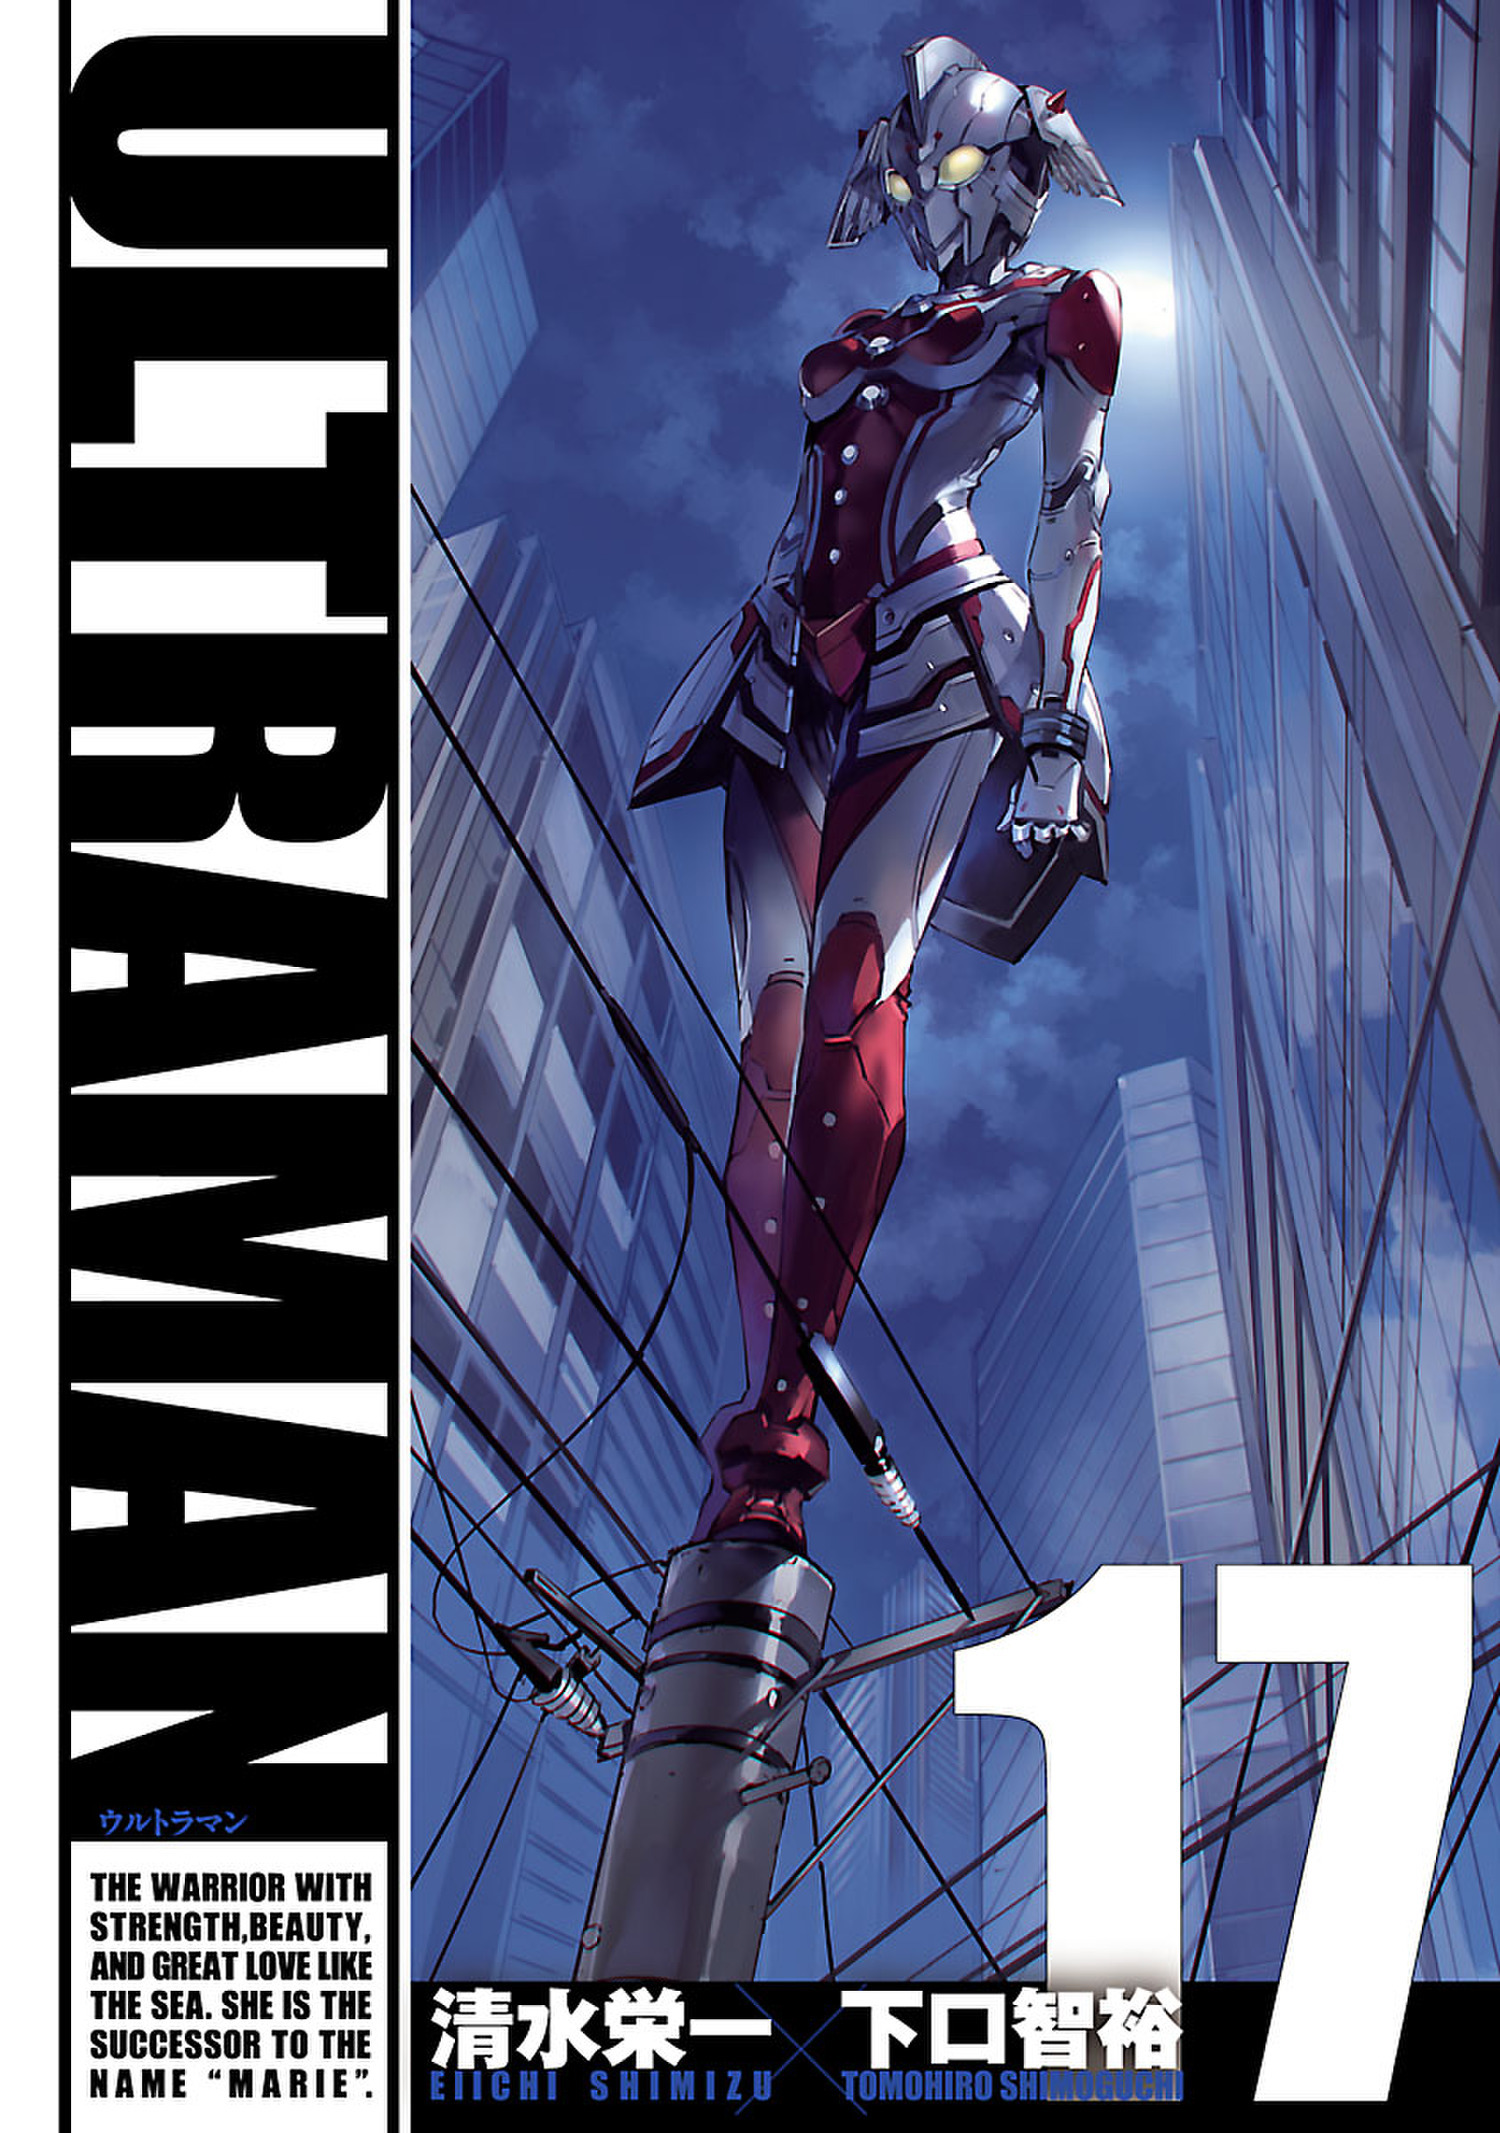 Ultraman２ ヒーローズコミックス 無料 試し読みなら Amebaマンガ 旧 読書のお時間です